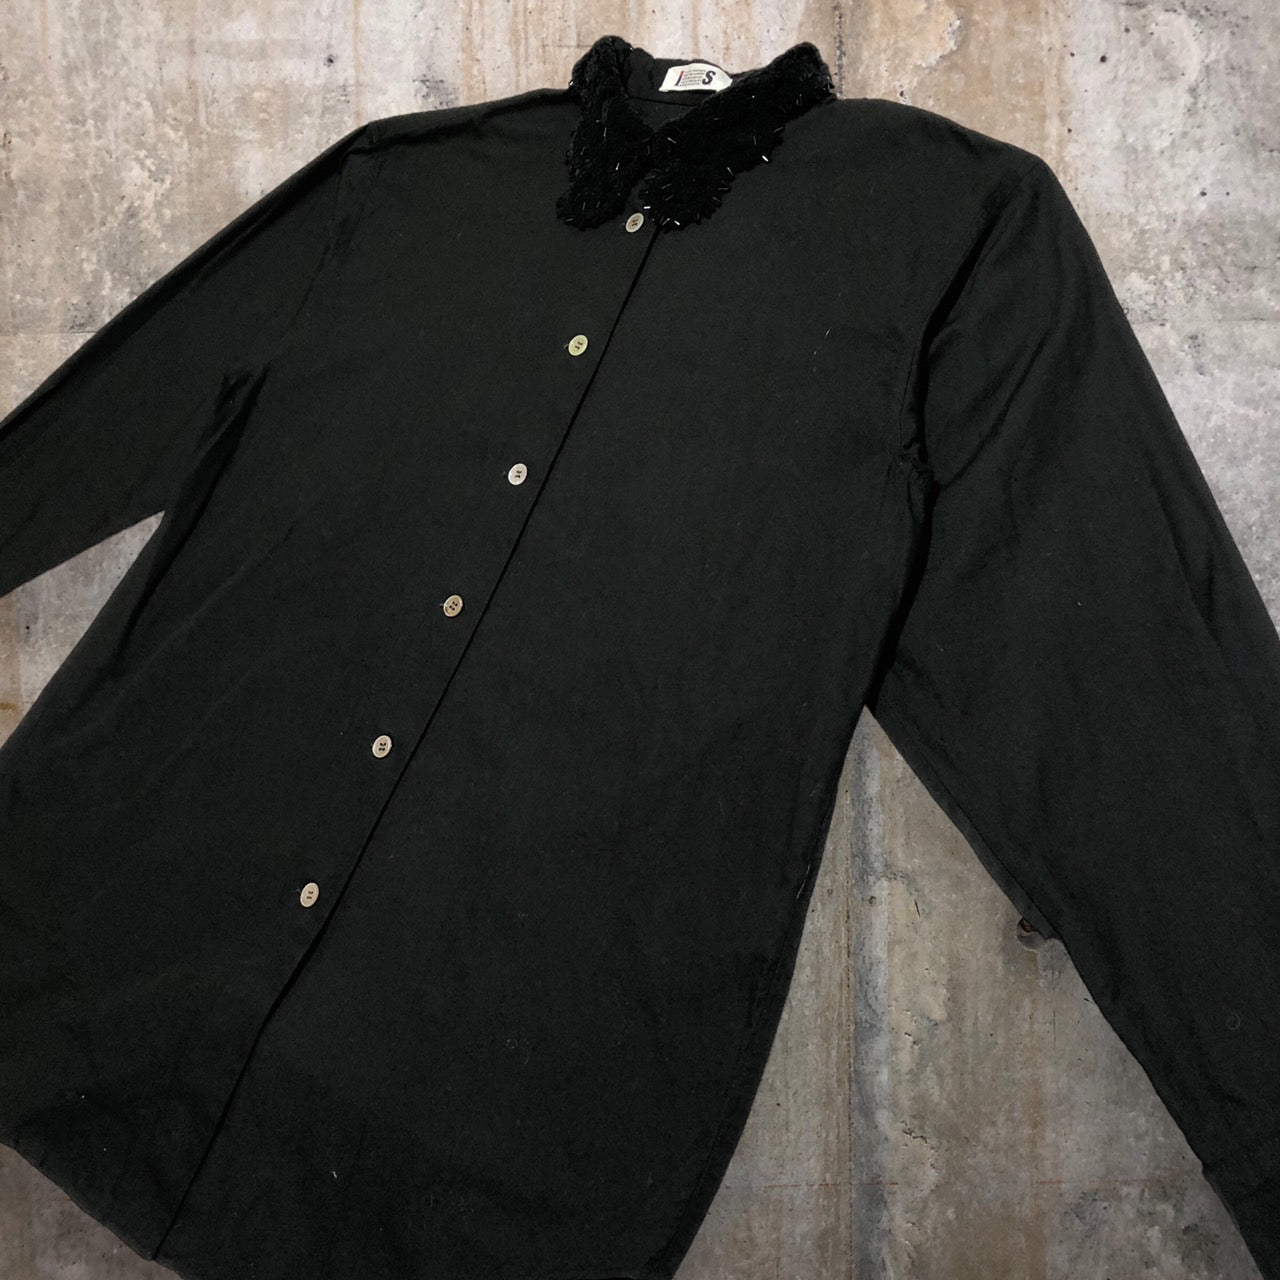 i.s. ISSEY MIYAKE(アイエス イッセイミヤケ) 90’s ビジューカラーワイドシャツ IS24-FJ001 M ブラック